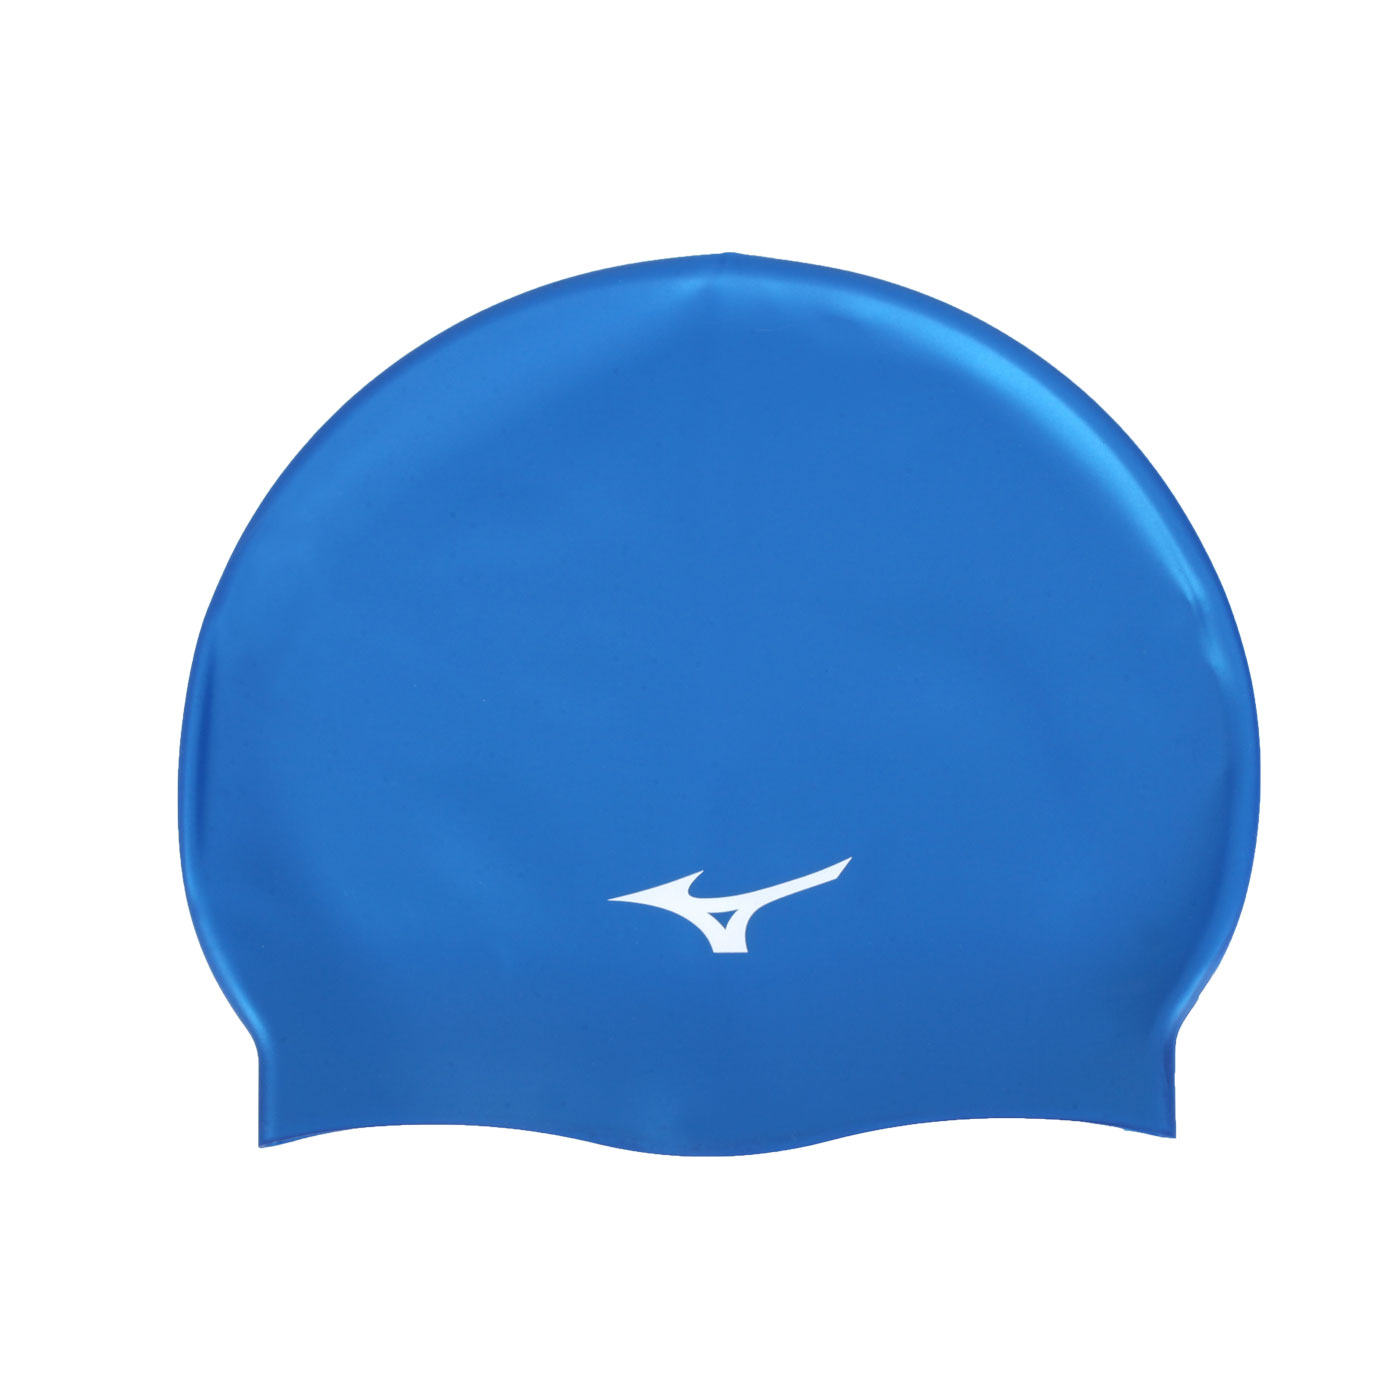 MIZUNO 矽膠泳帽  SWIMN2MW055300-01 - 藍白